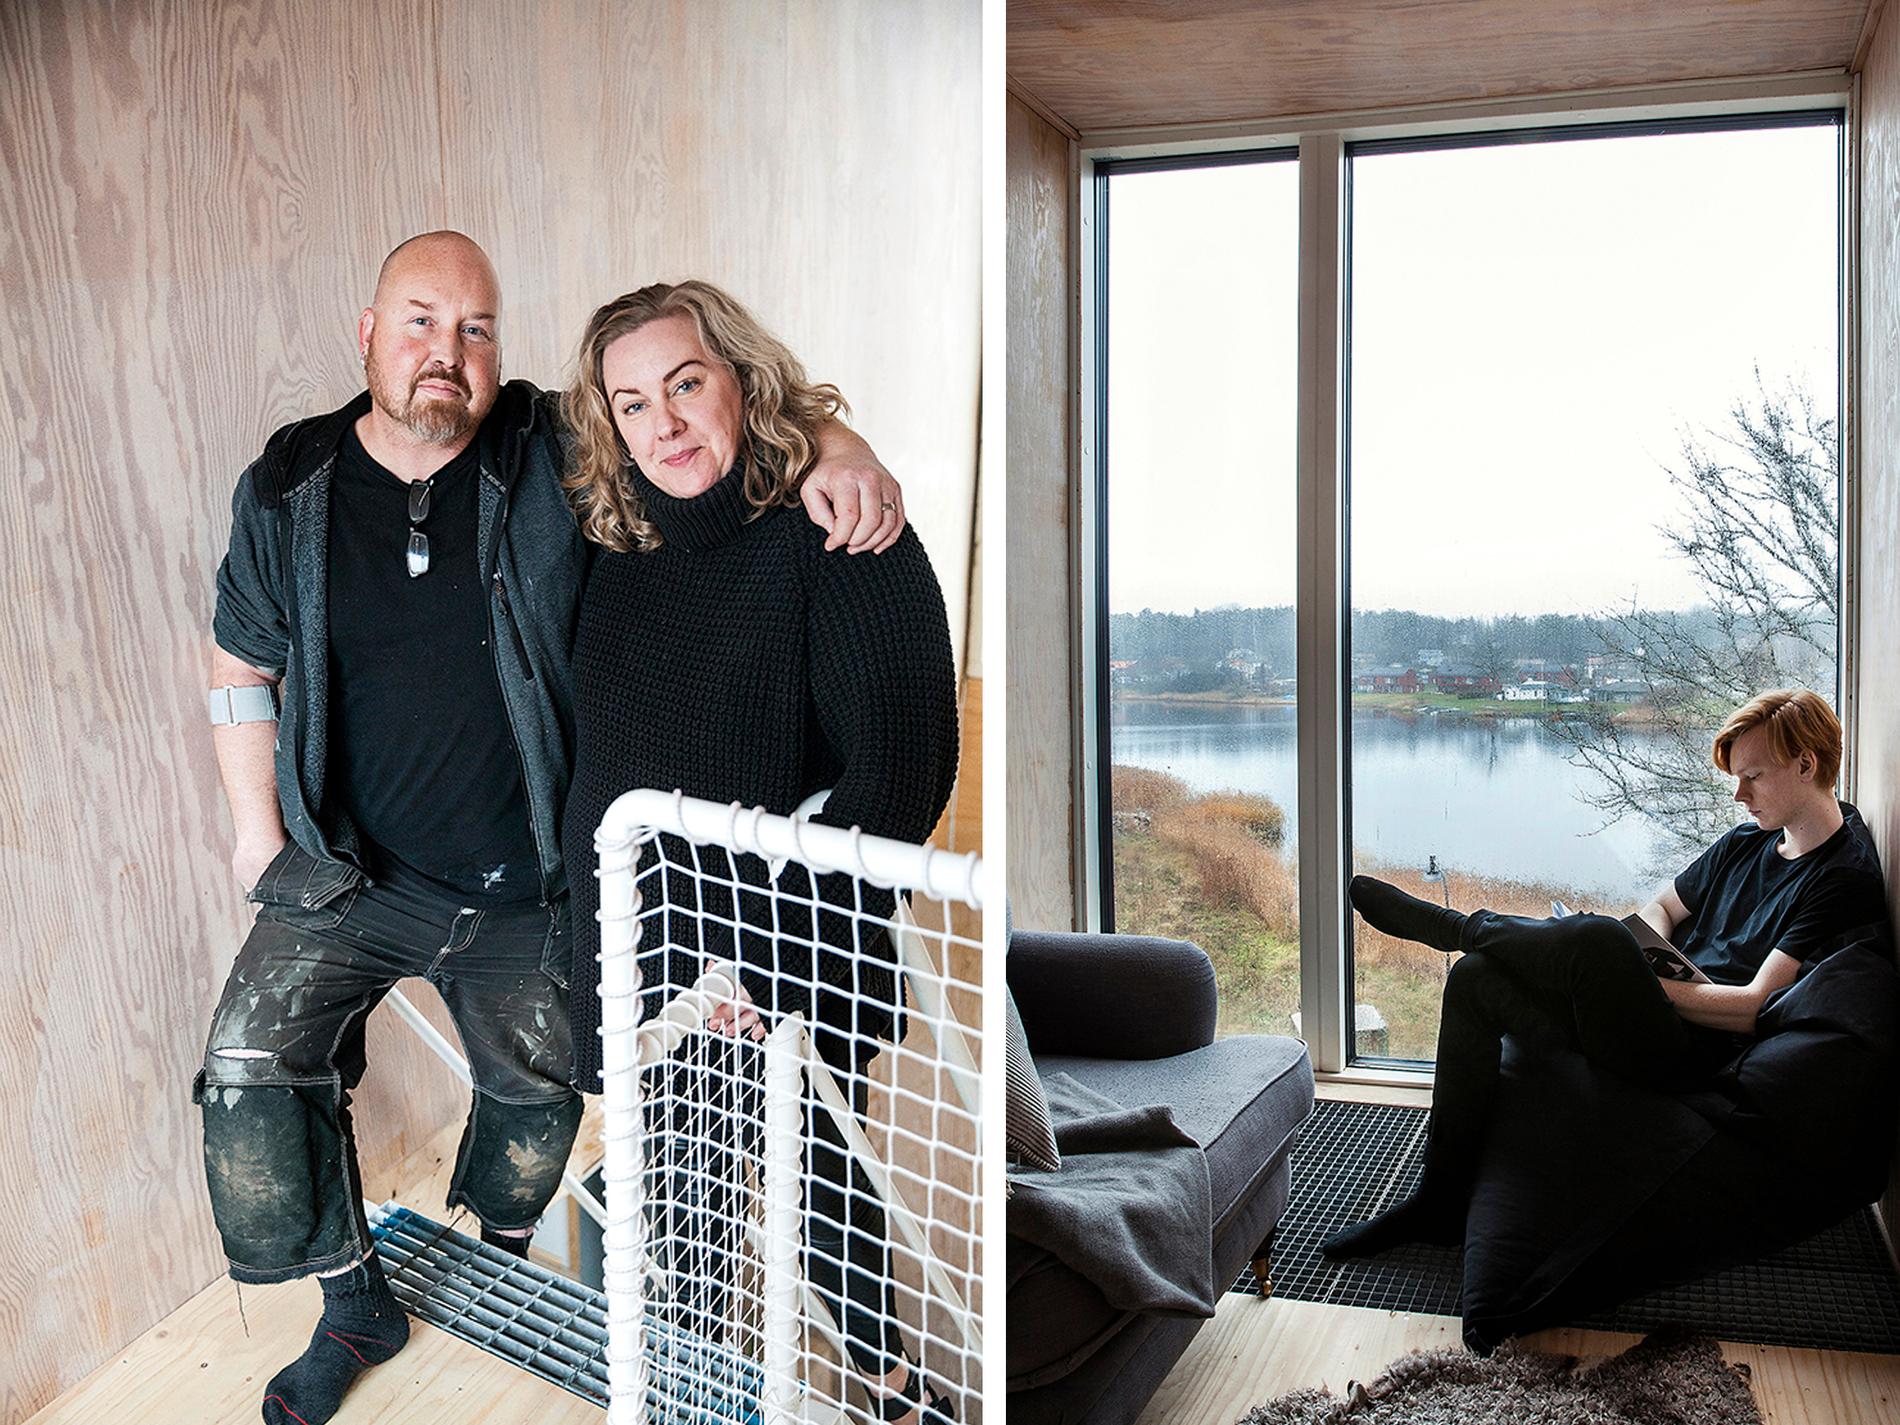 Thomas och Linda har byggt Sveriges första permanentboende av  containrar. Isak läser i örnnästet med utsikt över sjön. Härifrån är det 15 meter ner till vägen nedanför. Gallerdurken finns även i trappan till övervåningen och i hyllorna i köket.